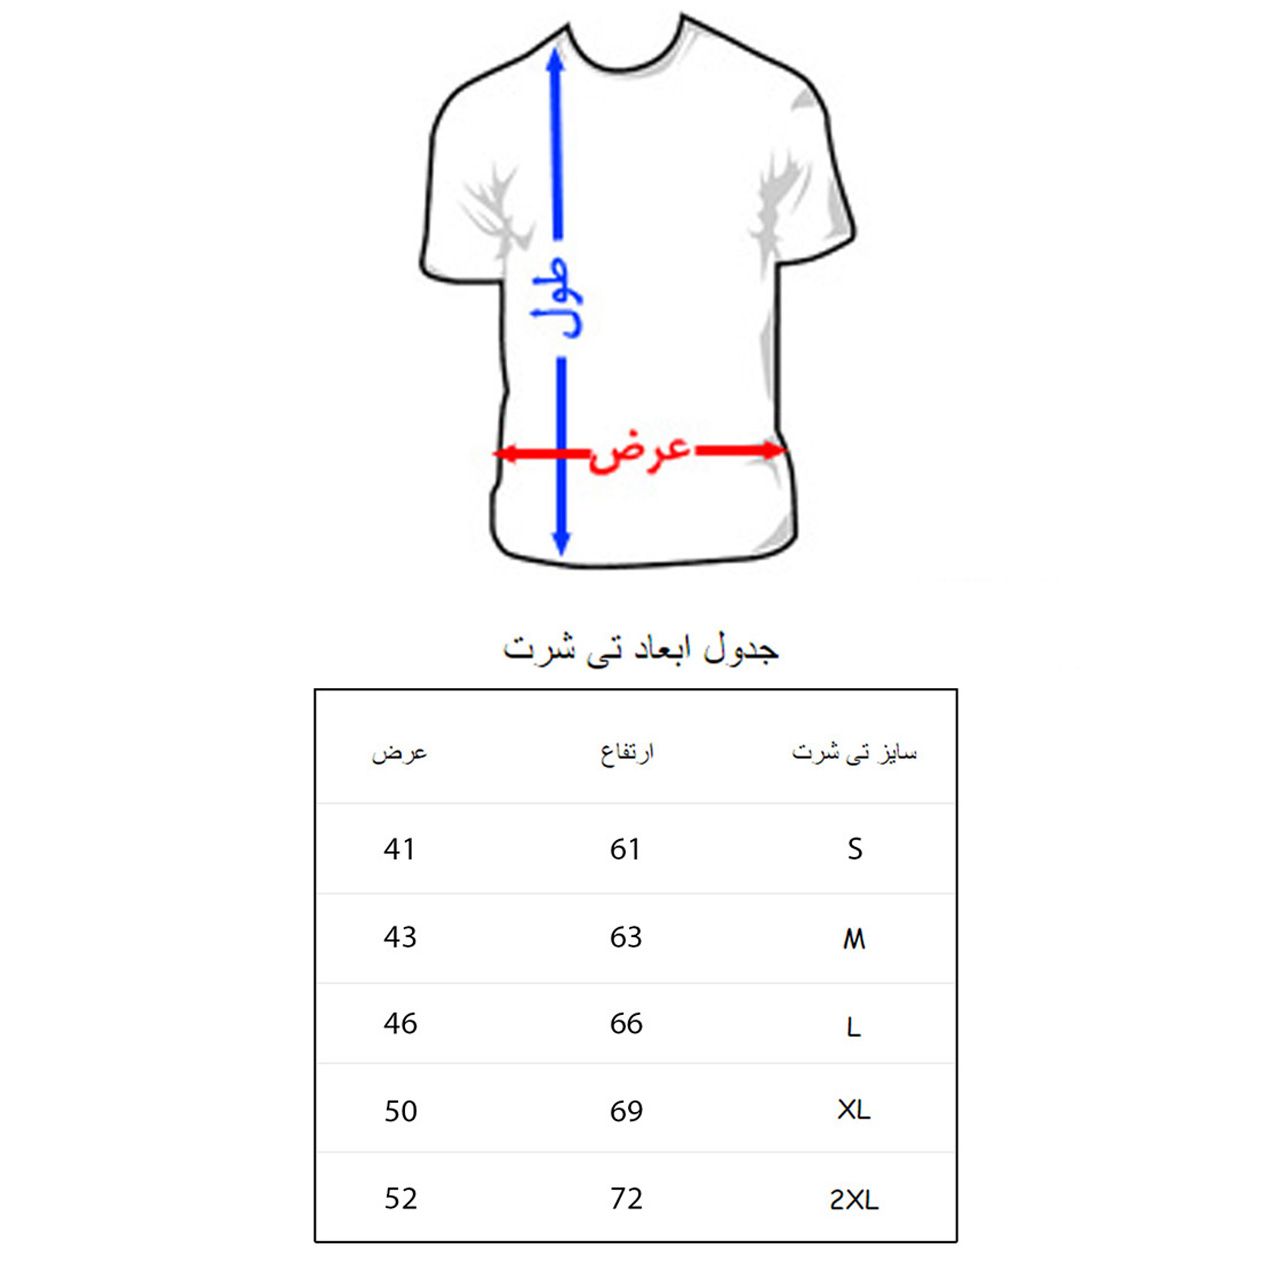 تی شرت مردانه به رسم طرح پاریس کد 3376 -  - 2